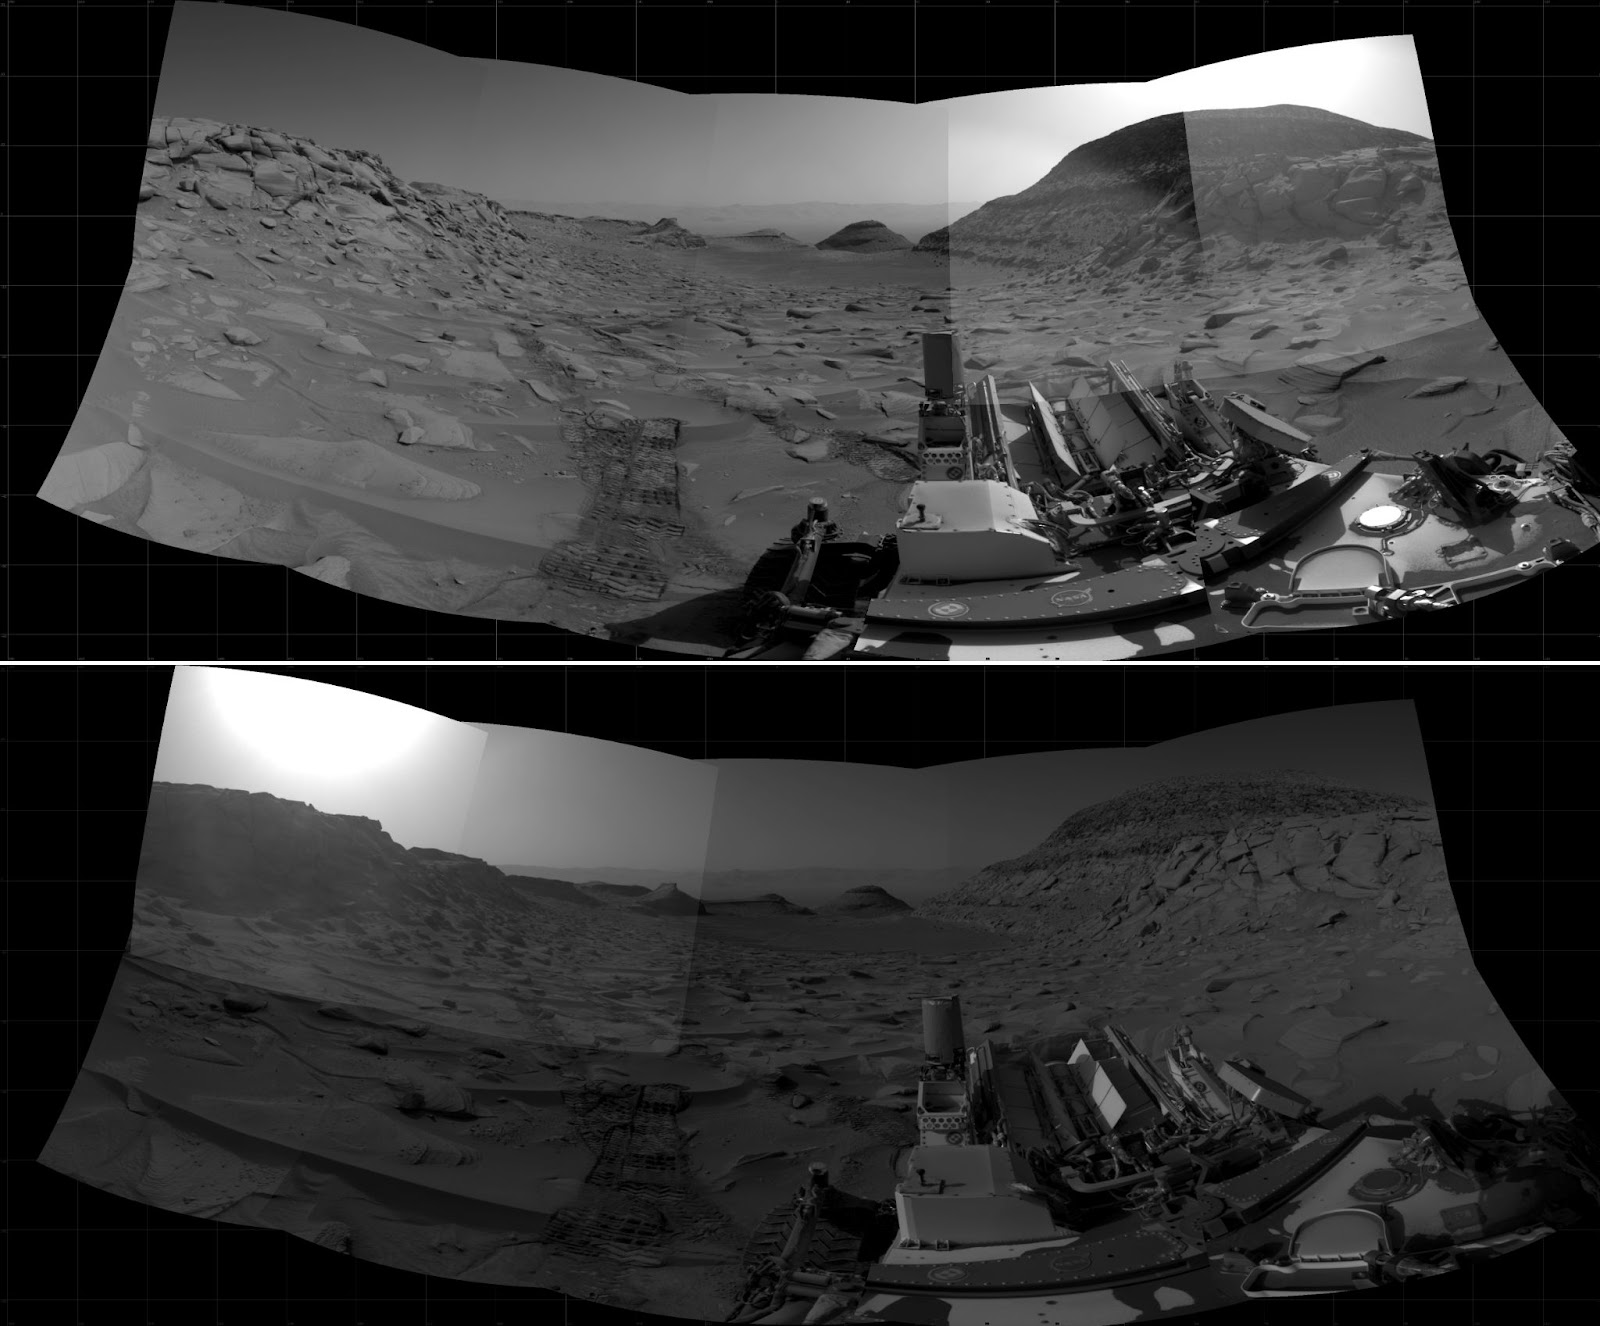 Imágenes compuestas de la superficie de Marte en blanco y negro